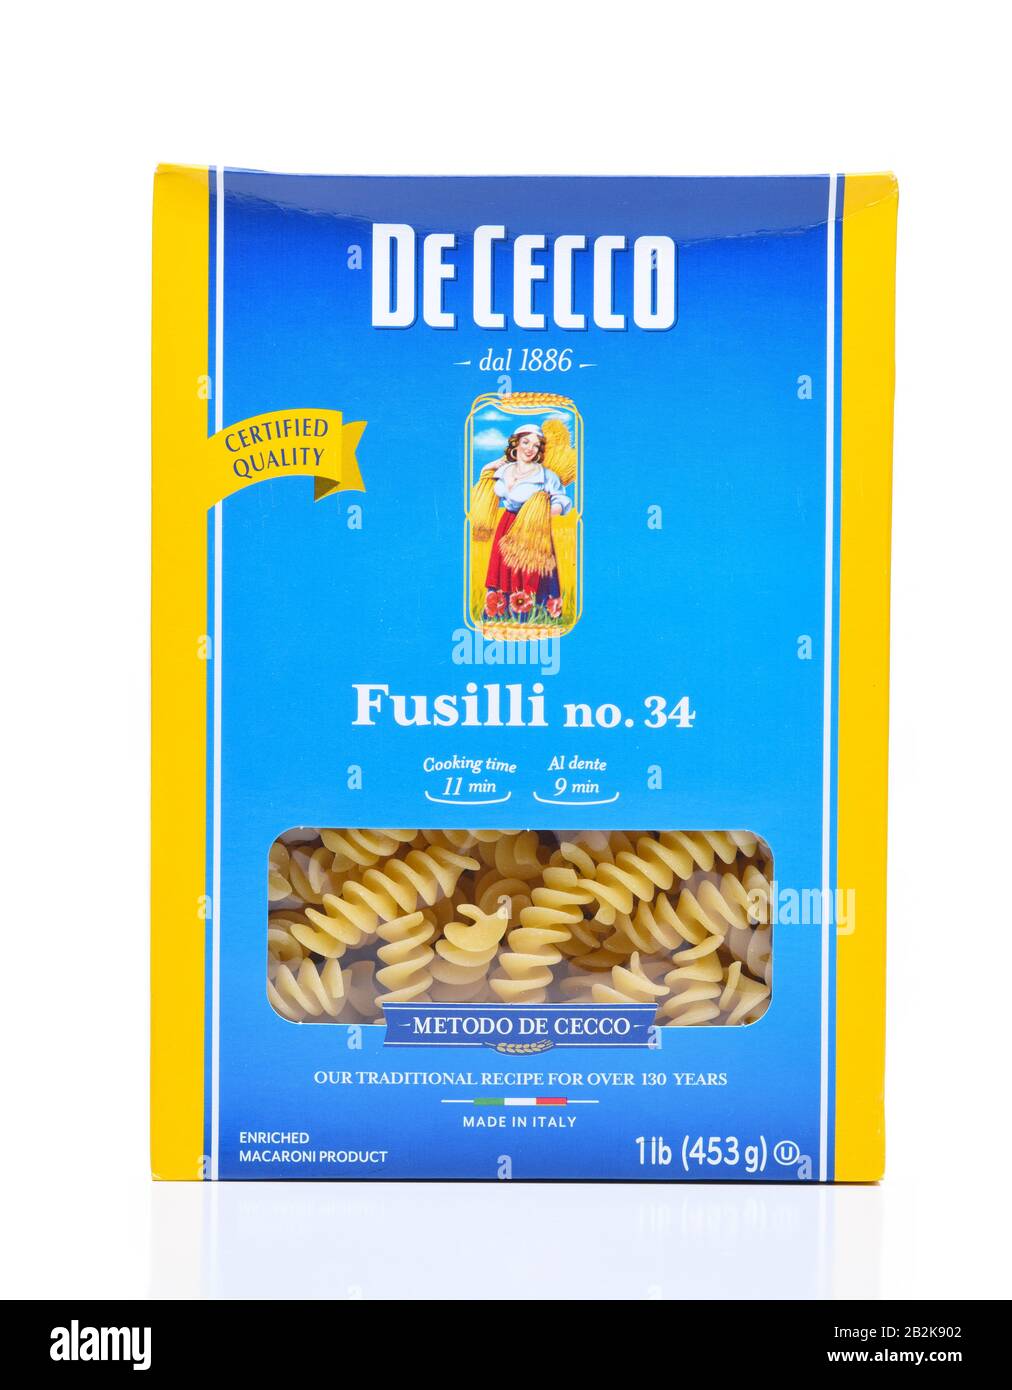 Irvine, KALIFORNIEN - DEC 4, 2018: Eine Schachtel von De Cecco Fusilli Pasta. De Cecco ist ein italienisches Unternehmen, das getrocknete Pasta, Mehl und andere verwandte Lebensmittel herstellt Stockfoto